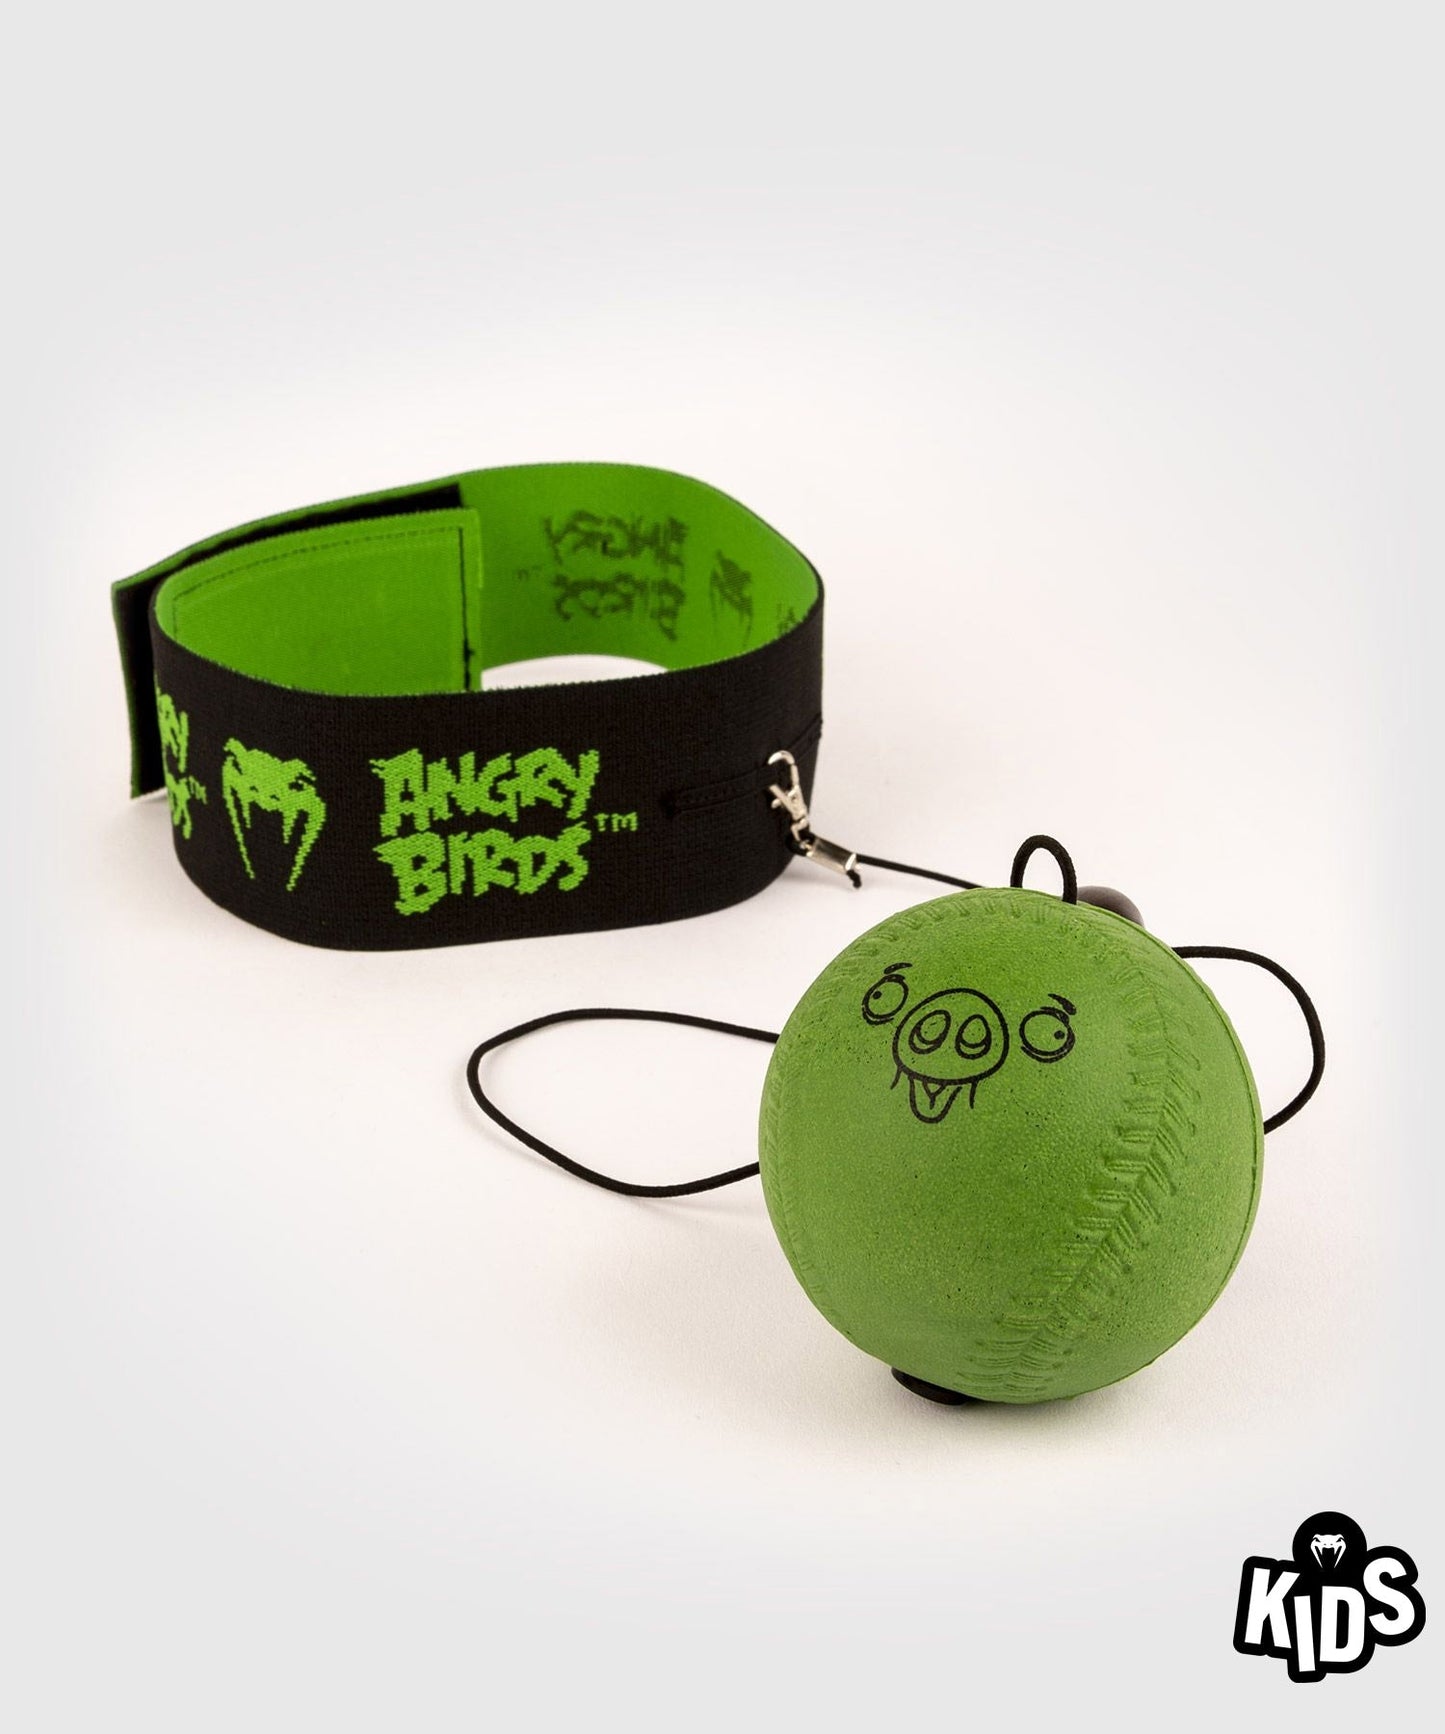 Рефлекторный мяч Venum Angry Birds - Для детей - Зеленый